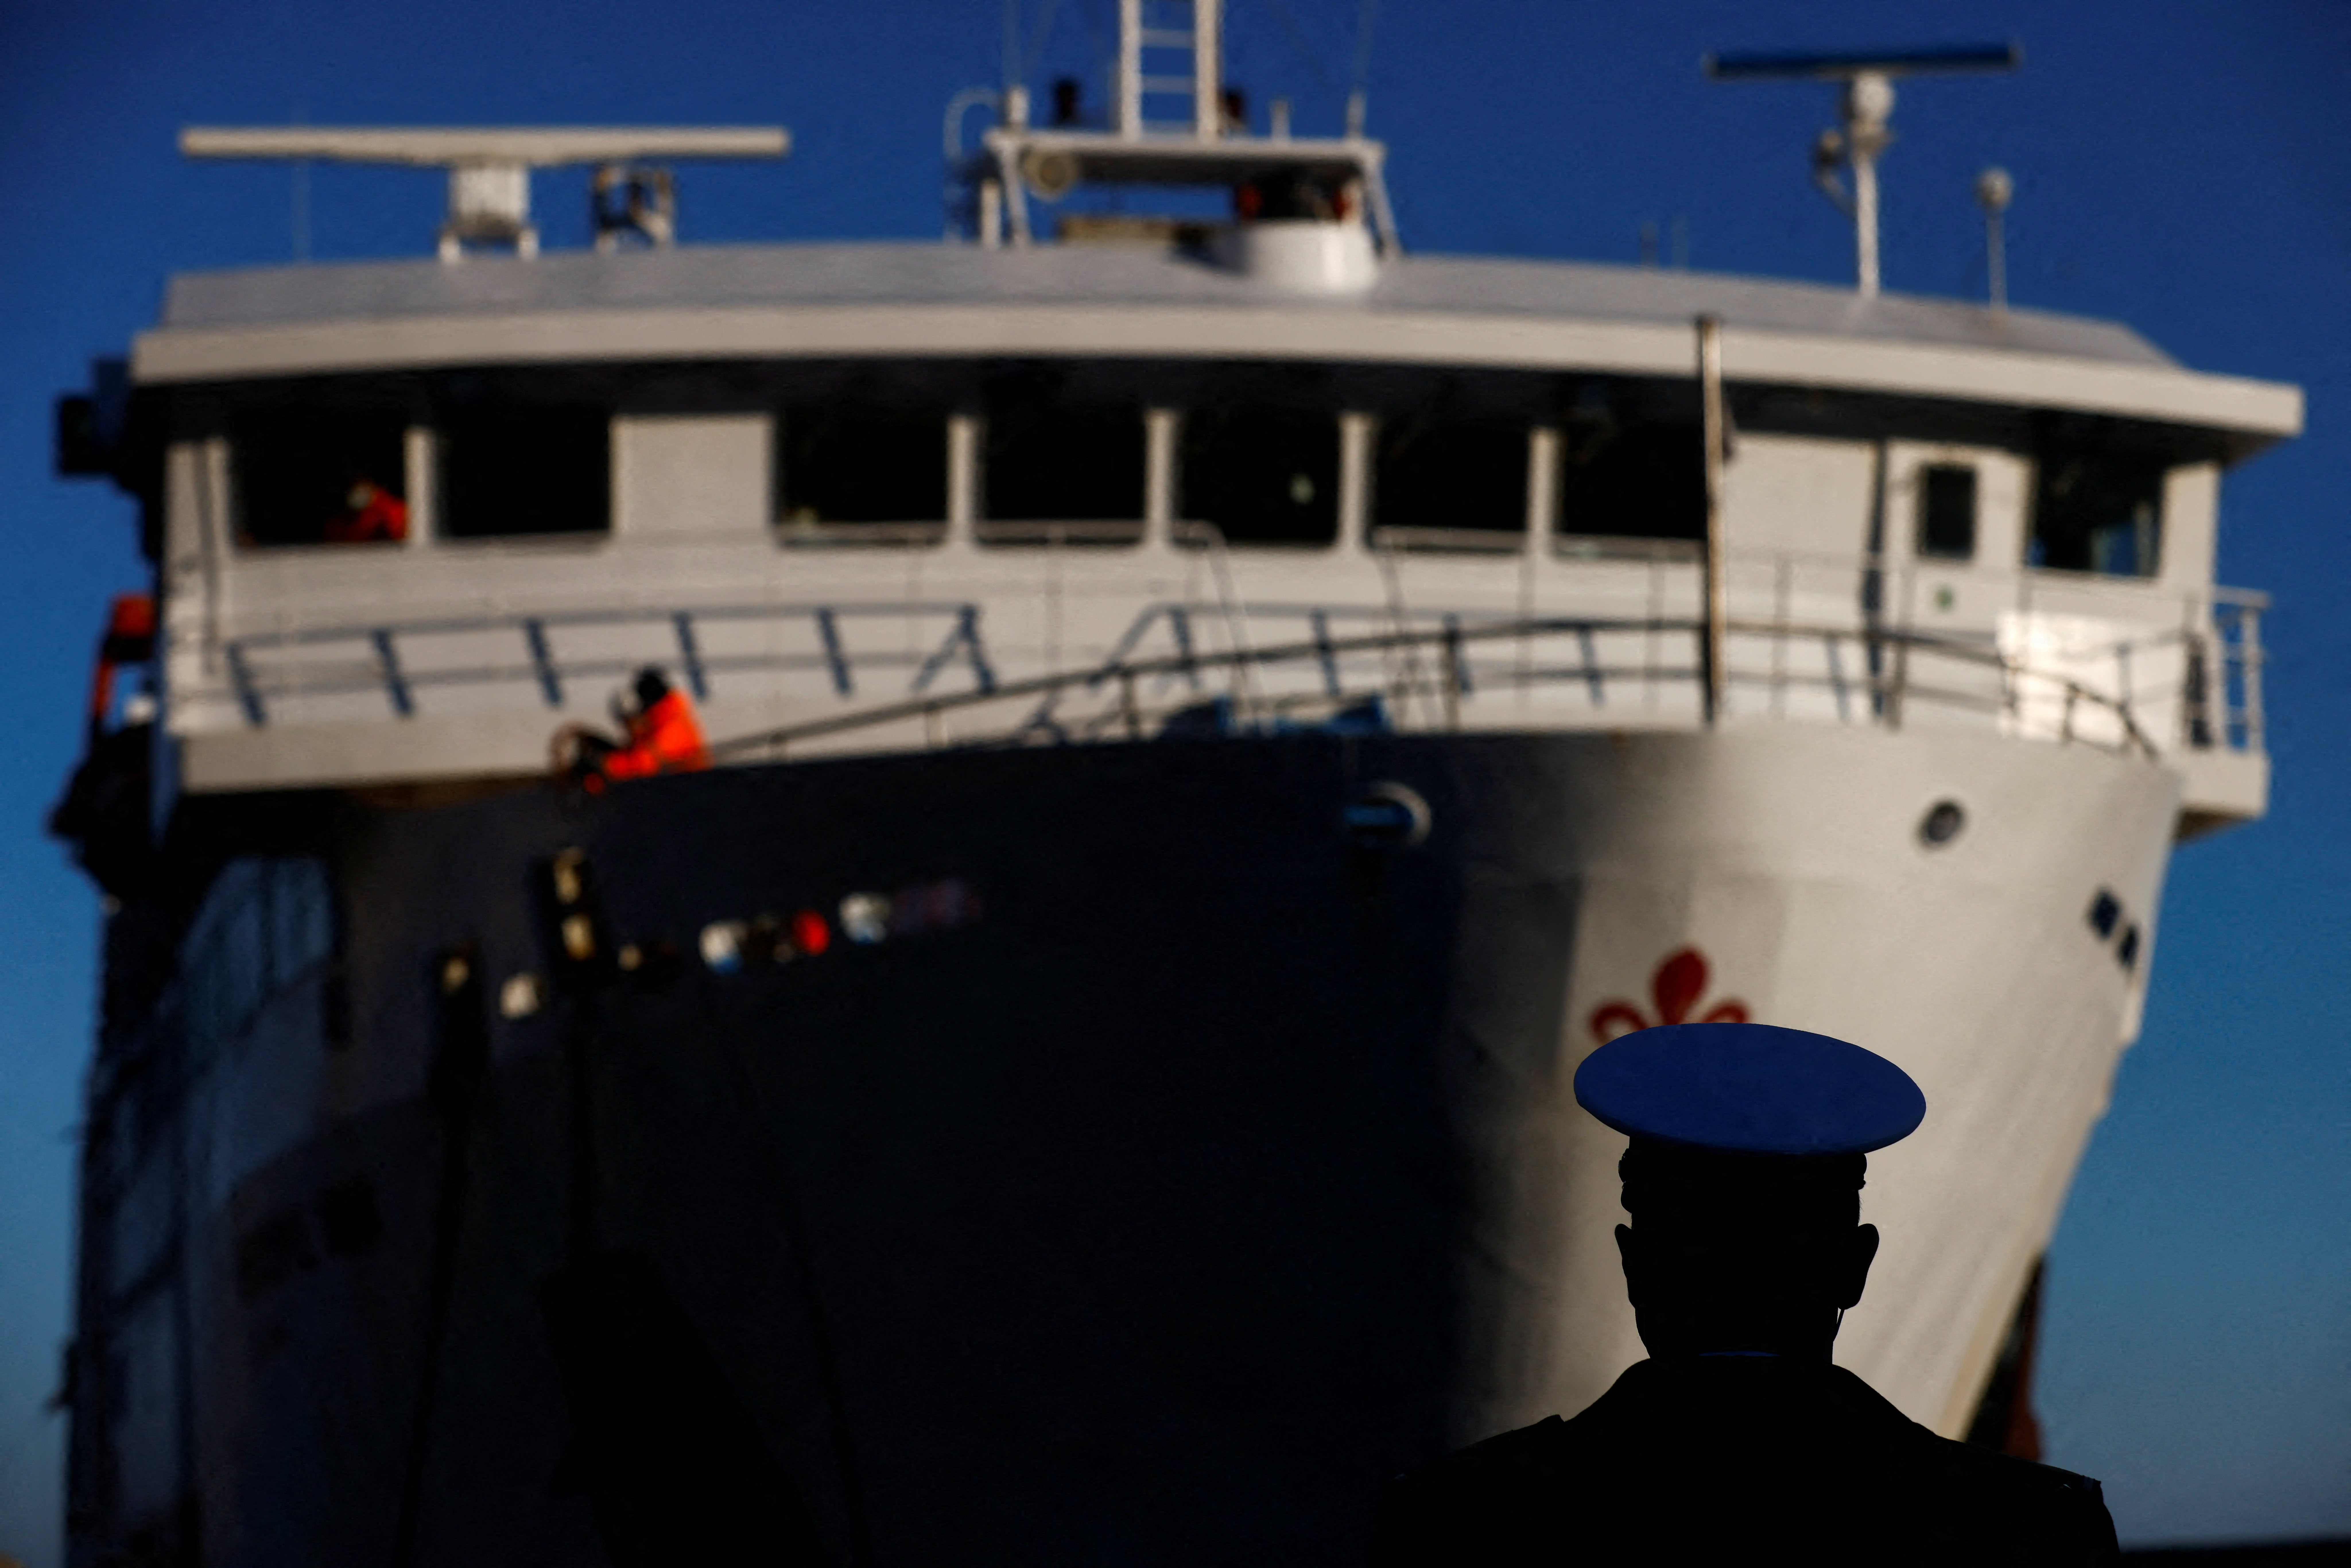 Et medlem av havnemyndighetene ser på mens en ferge ankommer på en dag av tiårsdagen for Costa Concordia-forliset som drepte 32 mennesker etter at det kantret og sank utenfor kysten, ved øya Giglio, Italia, 13. januar 2022. REUTERS/Yara Nardi